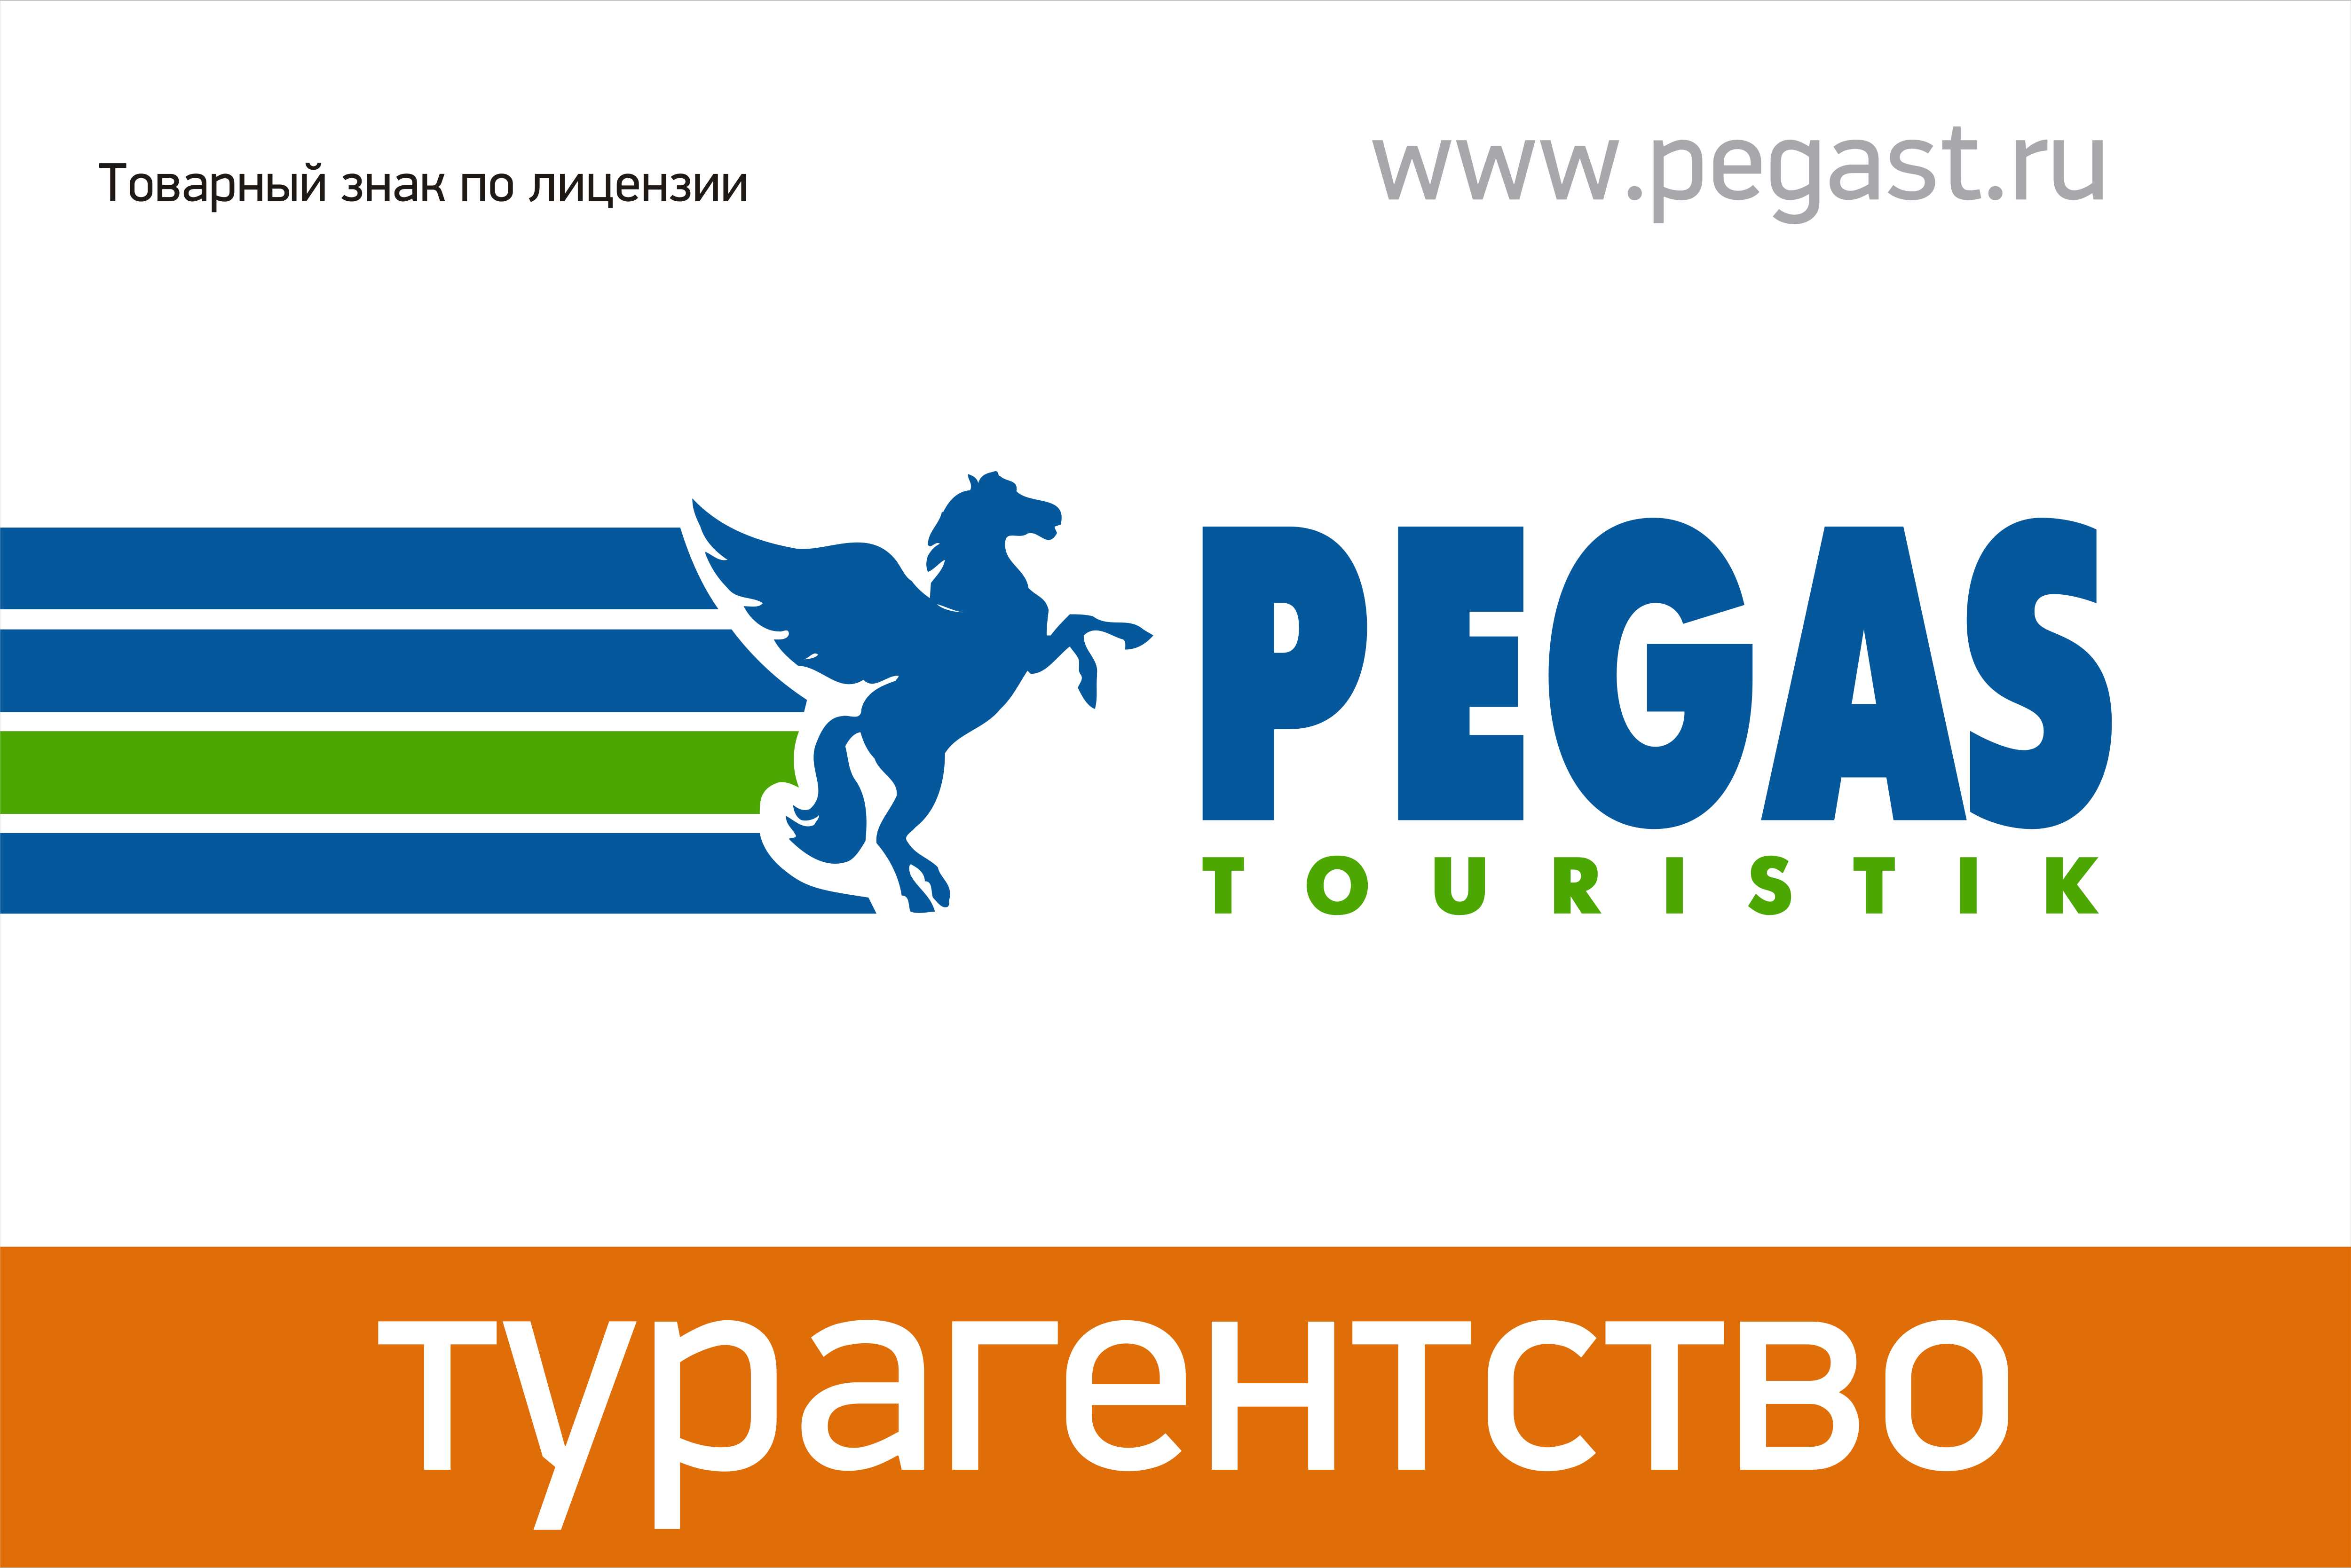 Сайт пегас туристик. Пегас Туристик. Pegas туроператор. Пегас логотип. Логотип туроператора Пегас Туристик.